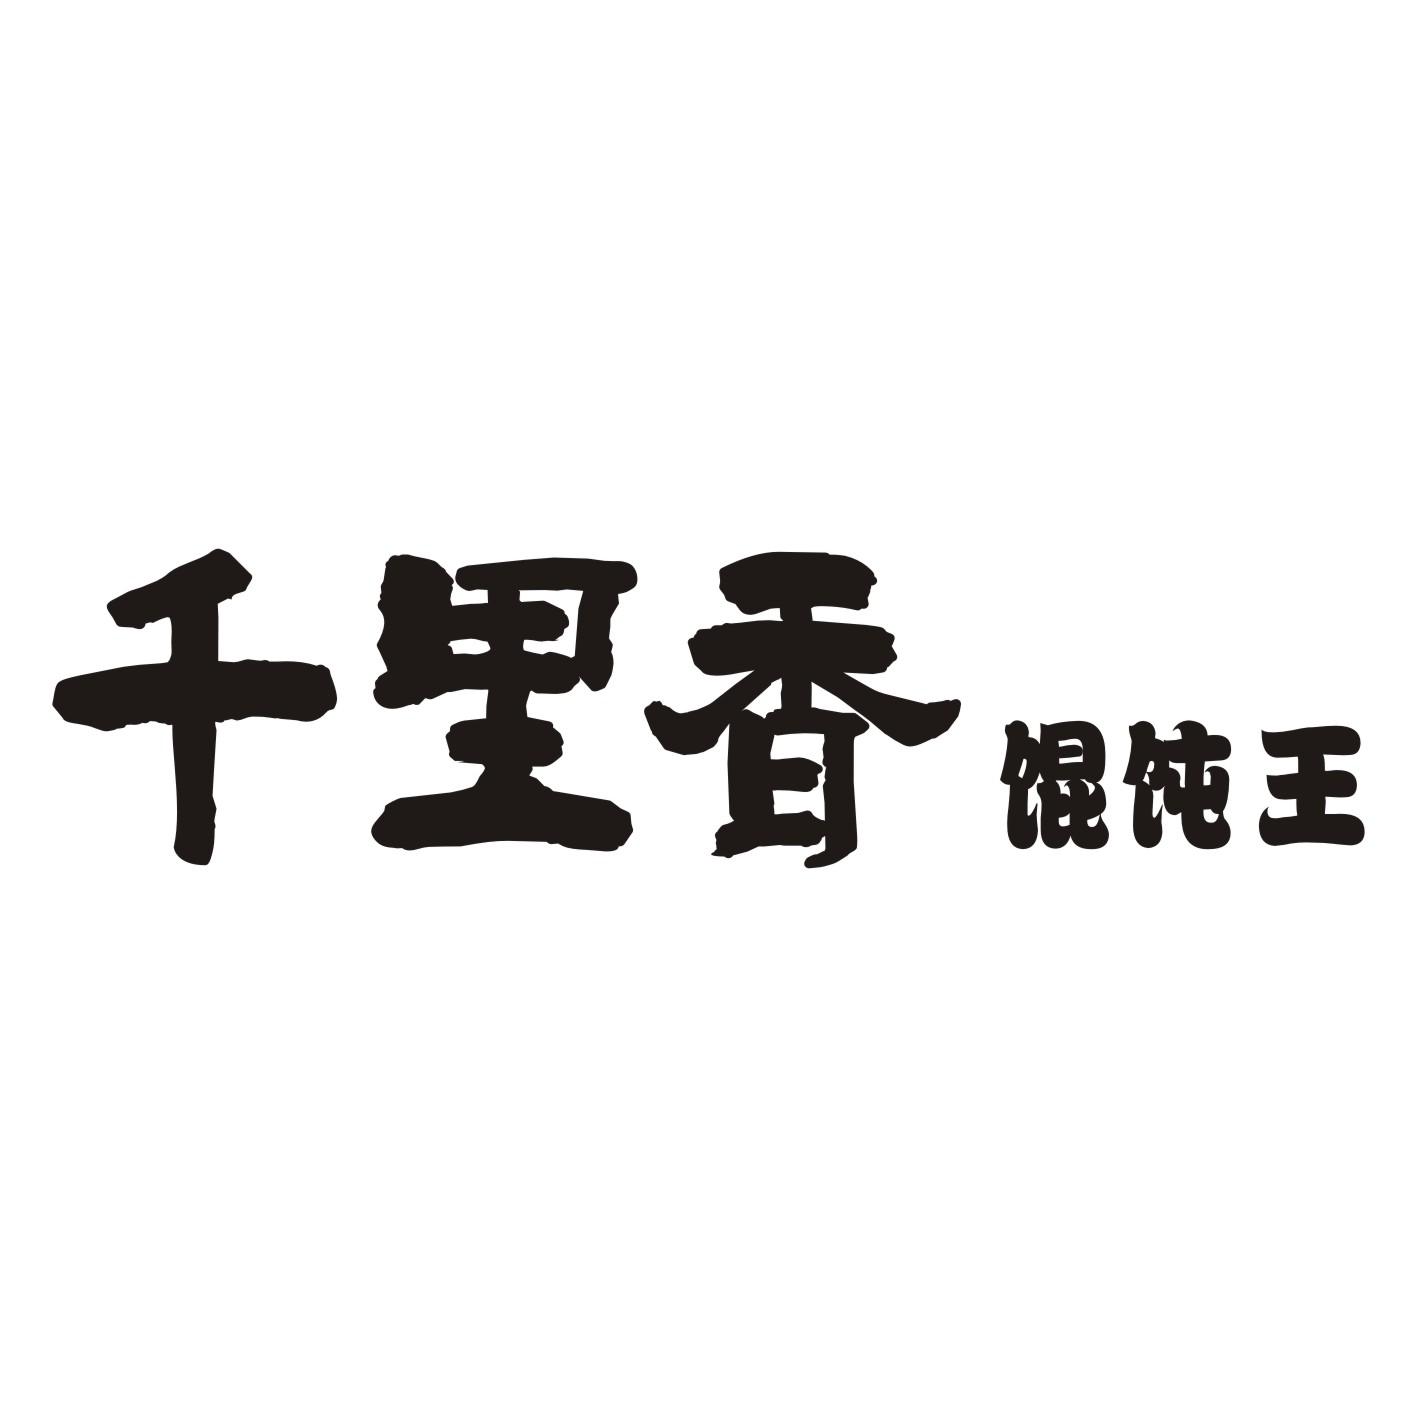 千里香馄饨logo图标图片